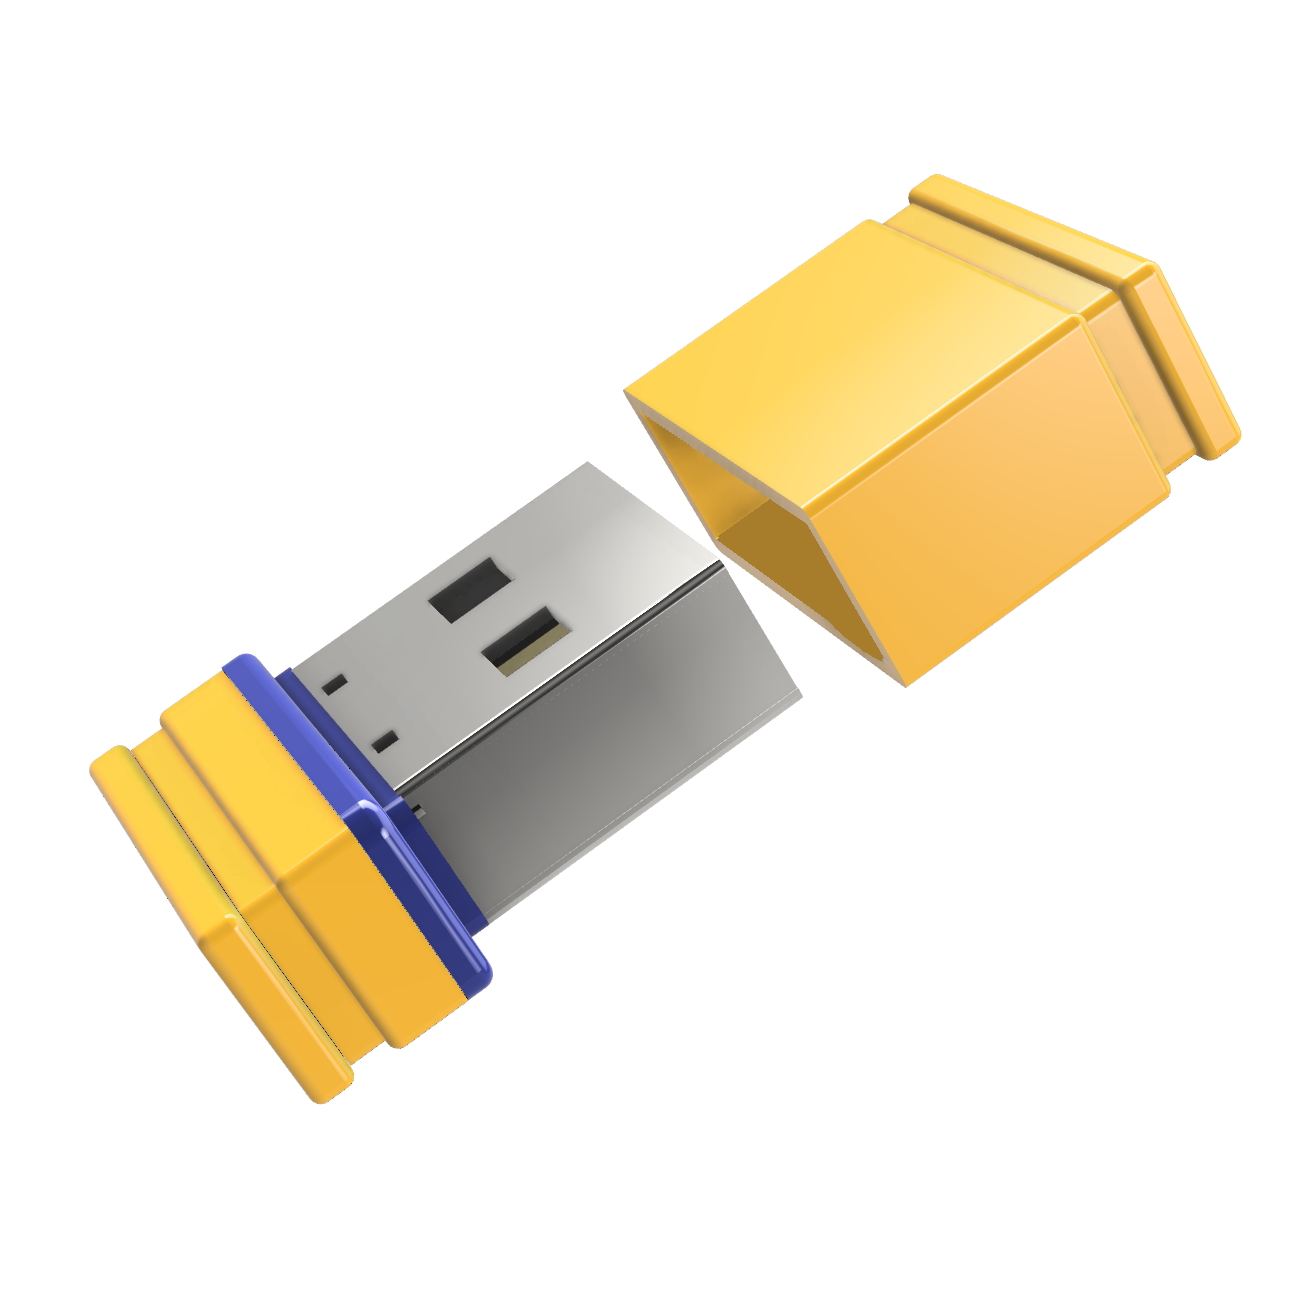 (Gelb/Blau, P1 USB Mini GB) GERMANY ®ULTRA 8 USB-Stick